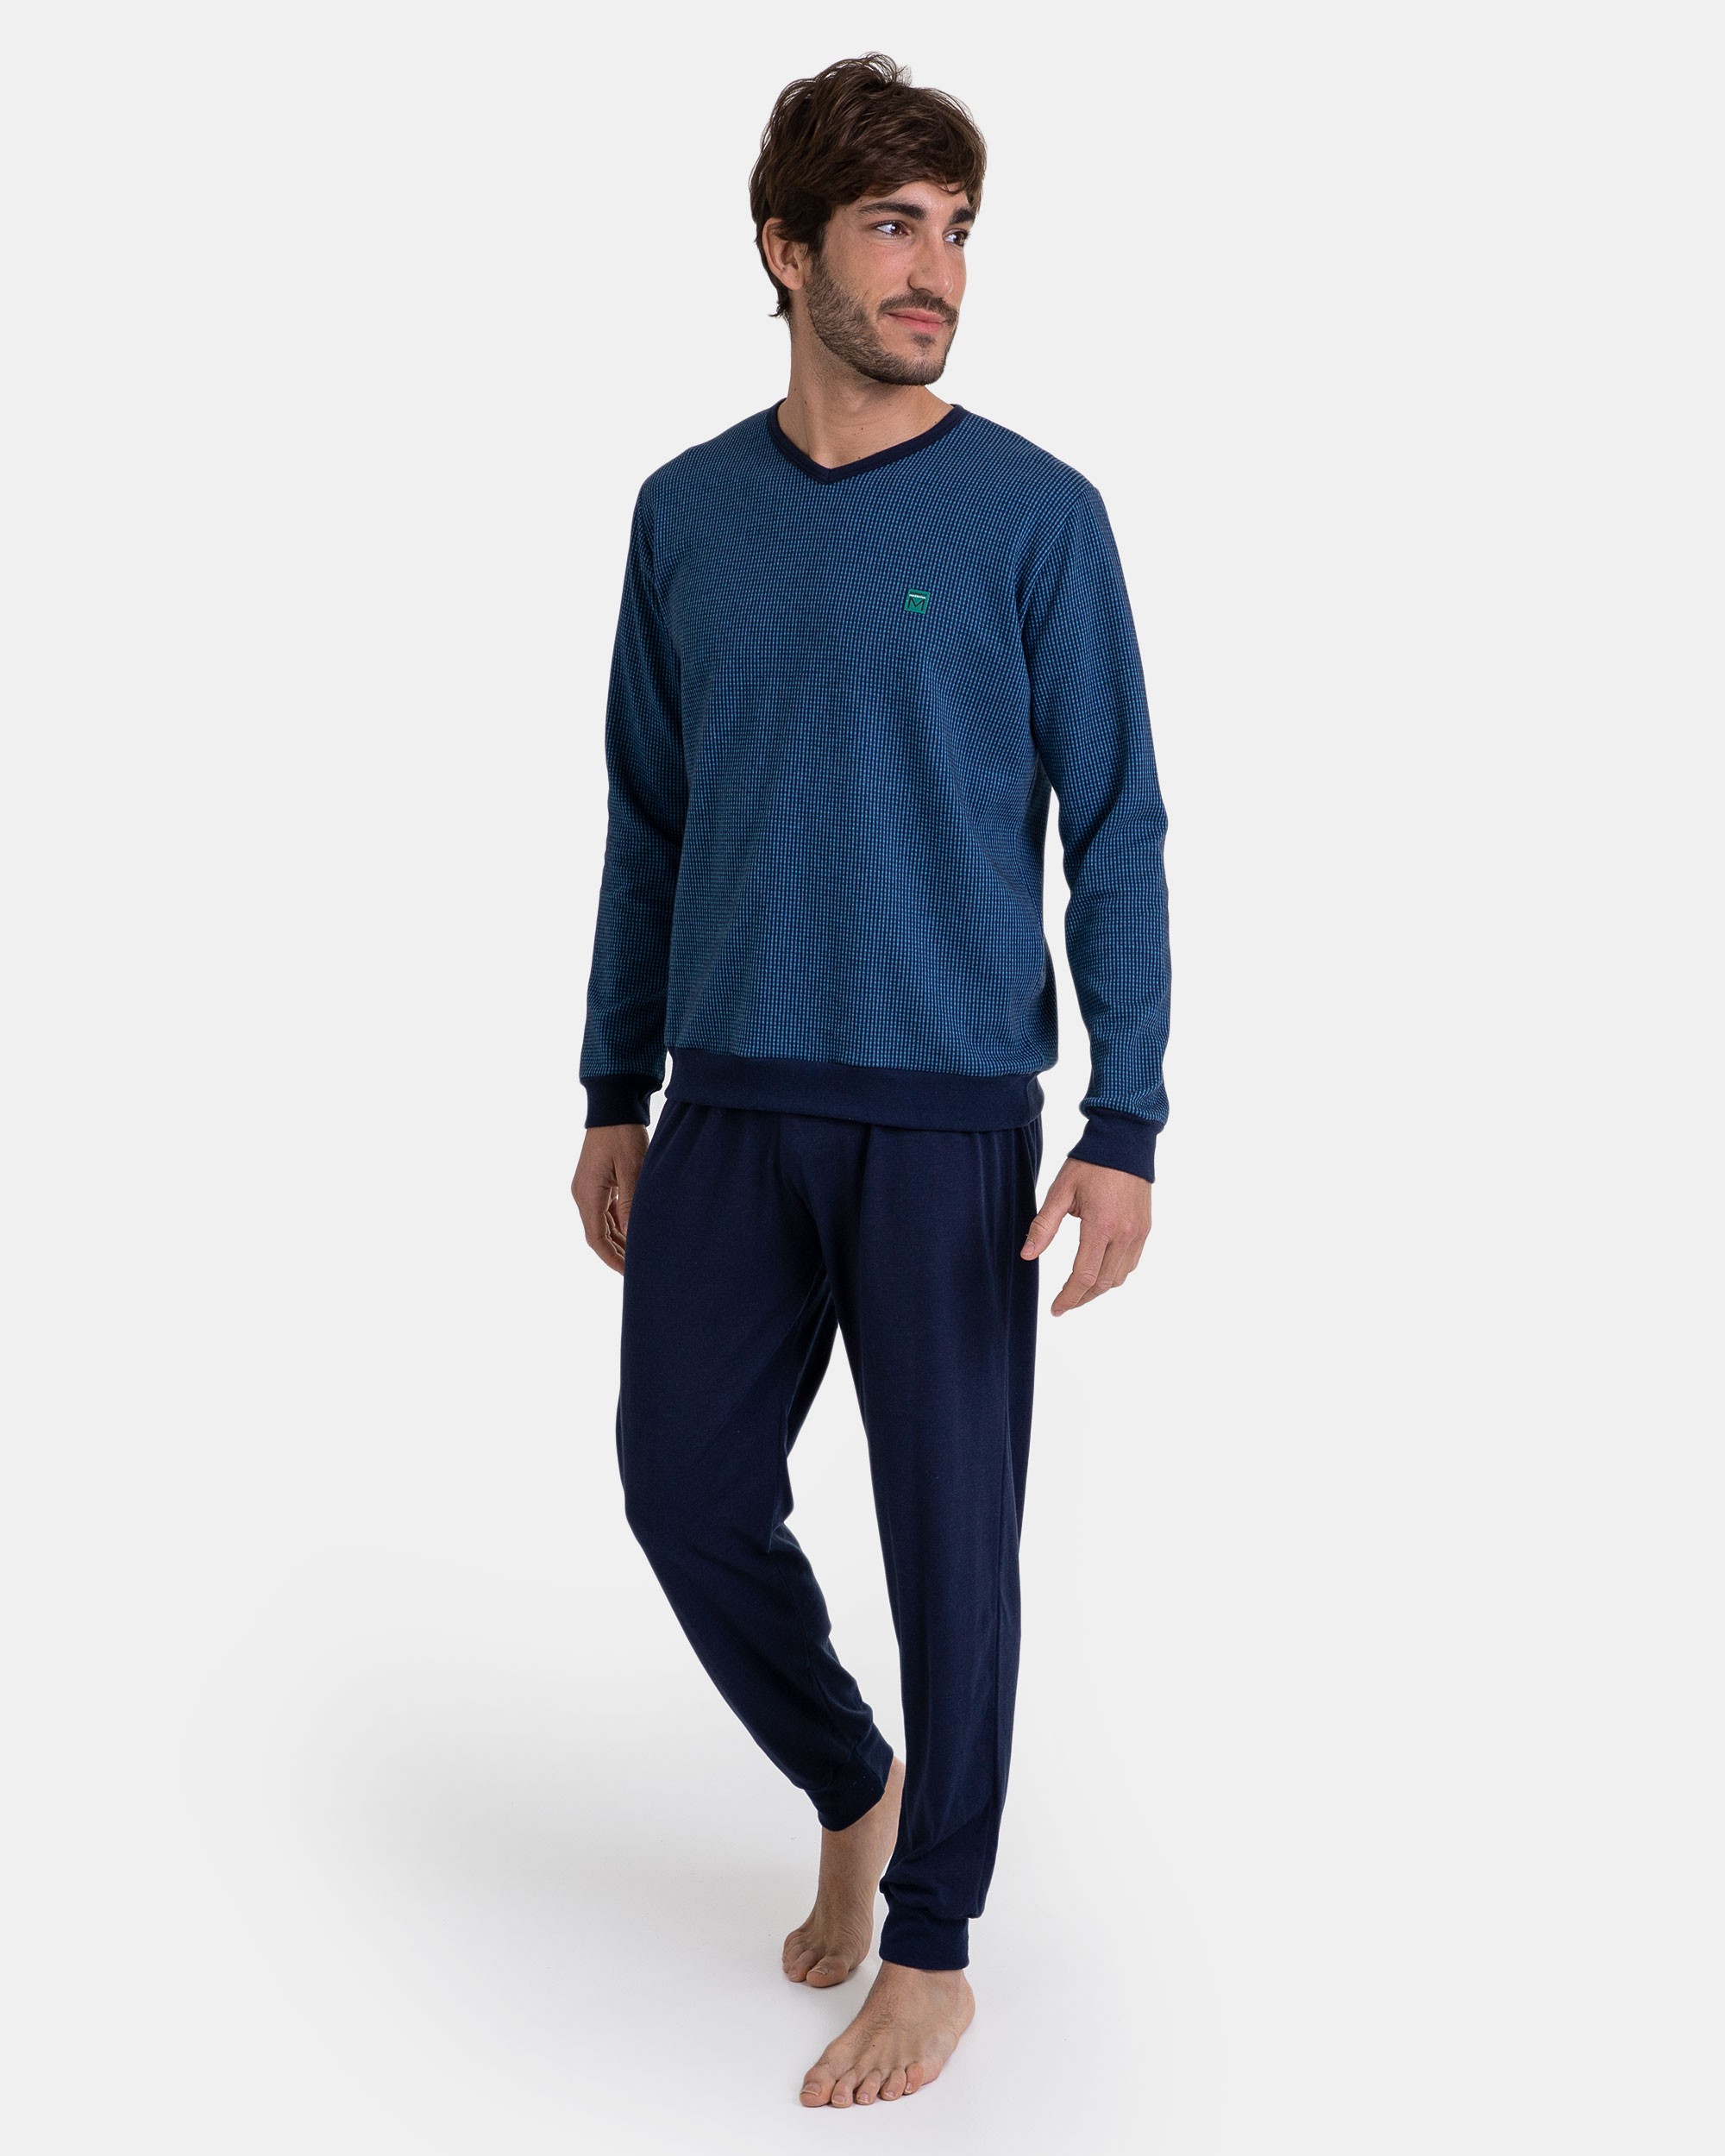 Pijama hombre invierno Massana modelo Stripes en color azul y terciopelo.  Un clásico renovado.